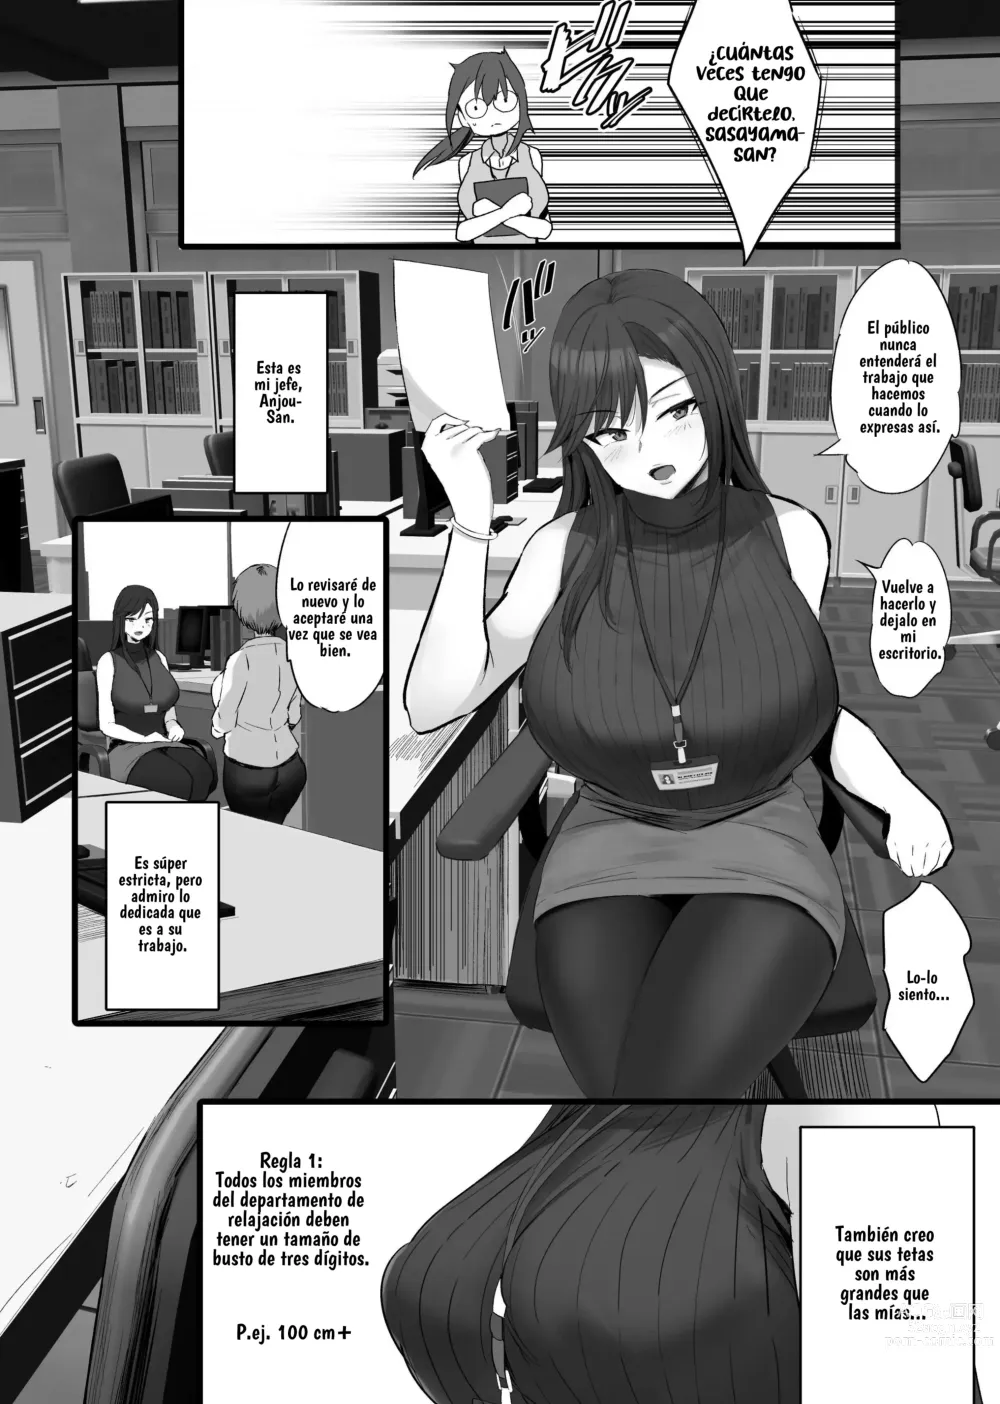 Page 3 of doujinshi Me asignaron al departamento de relajación.